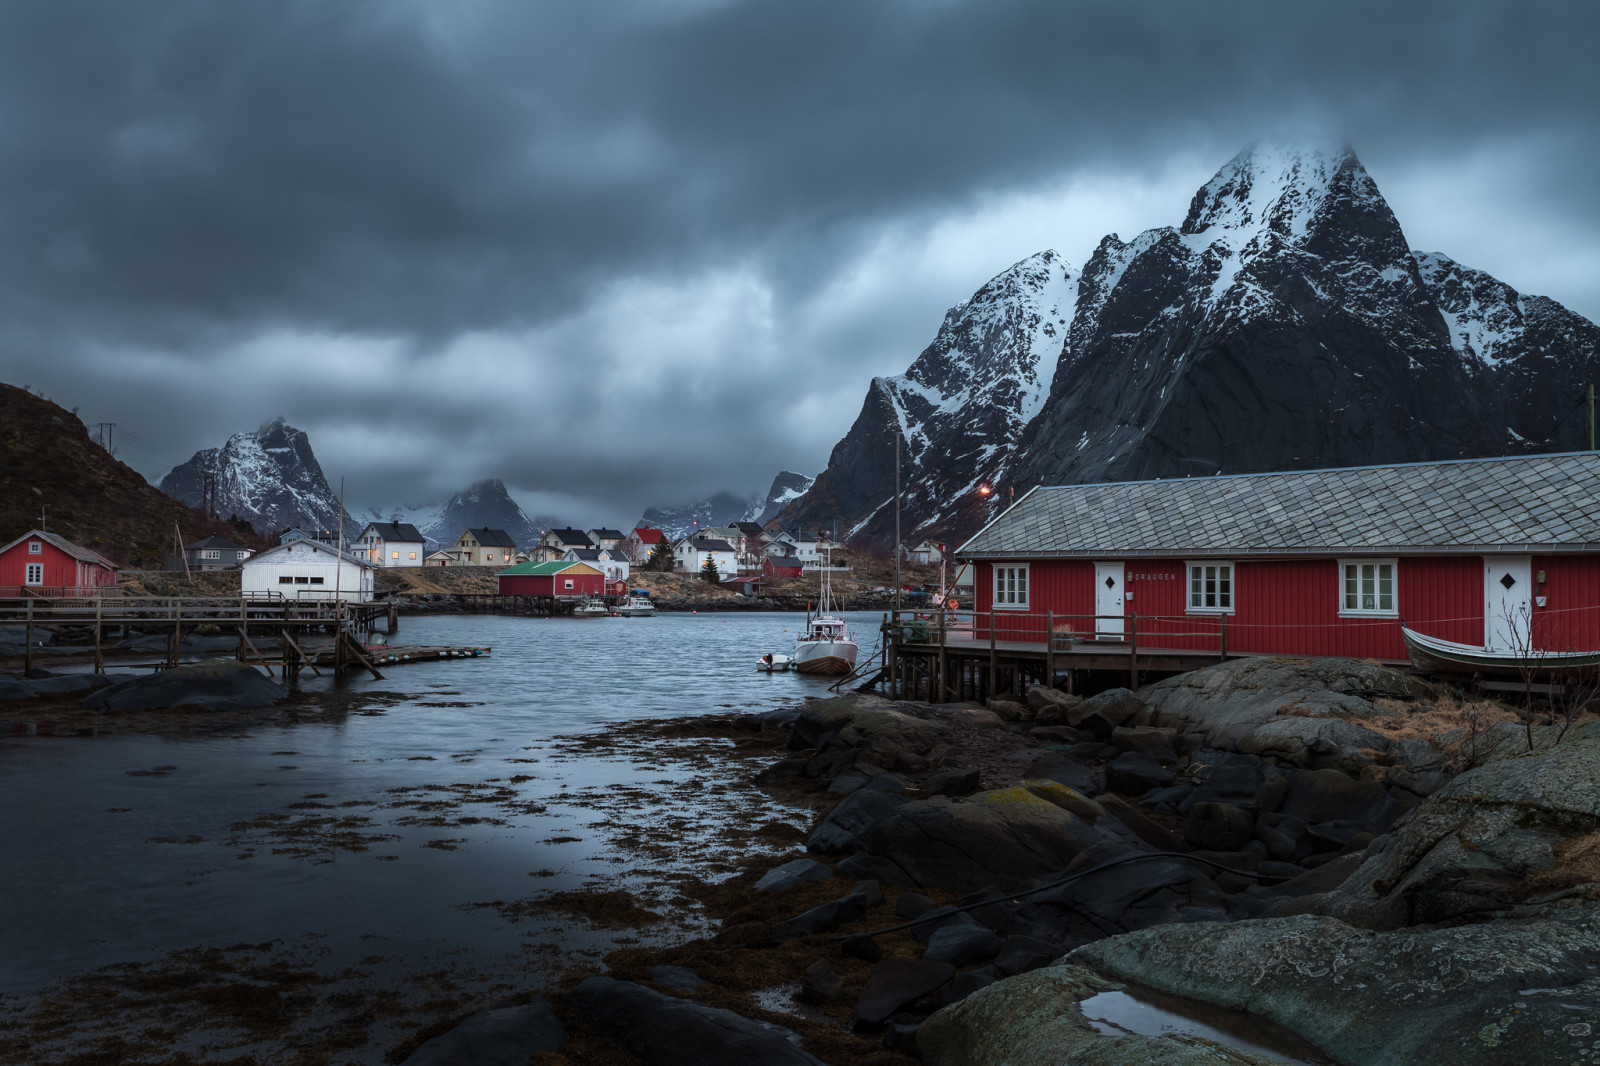 salju, awan, gunung, Norway, rumah, kapal, badai, Desa